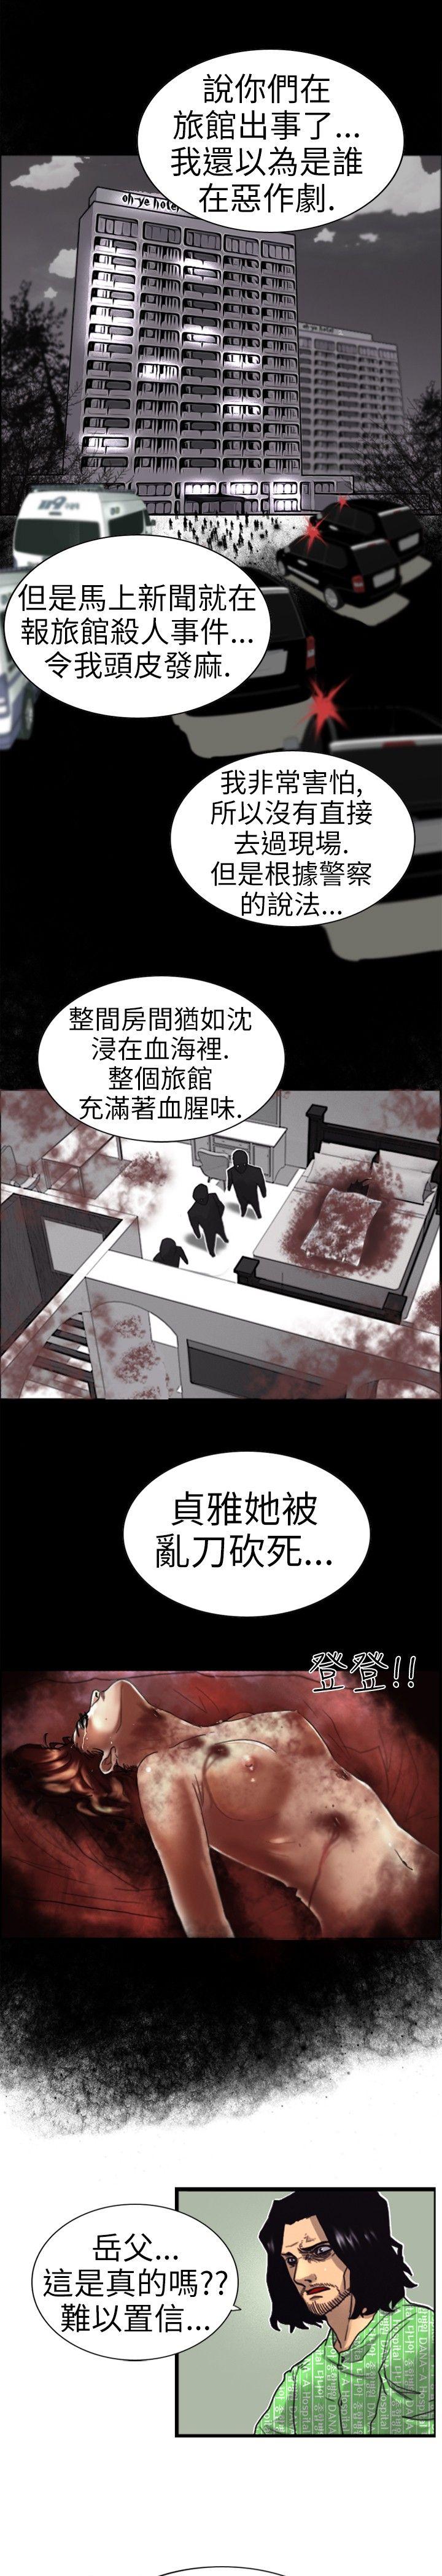 韩国污漫画 覺醒(完結) 第2话觉醒 23